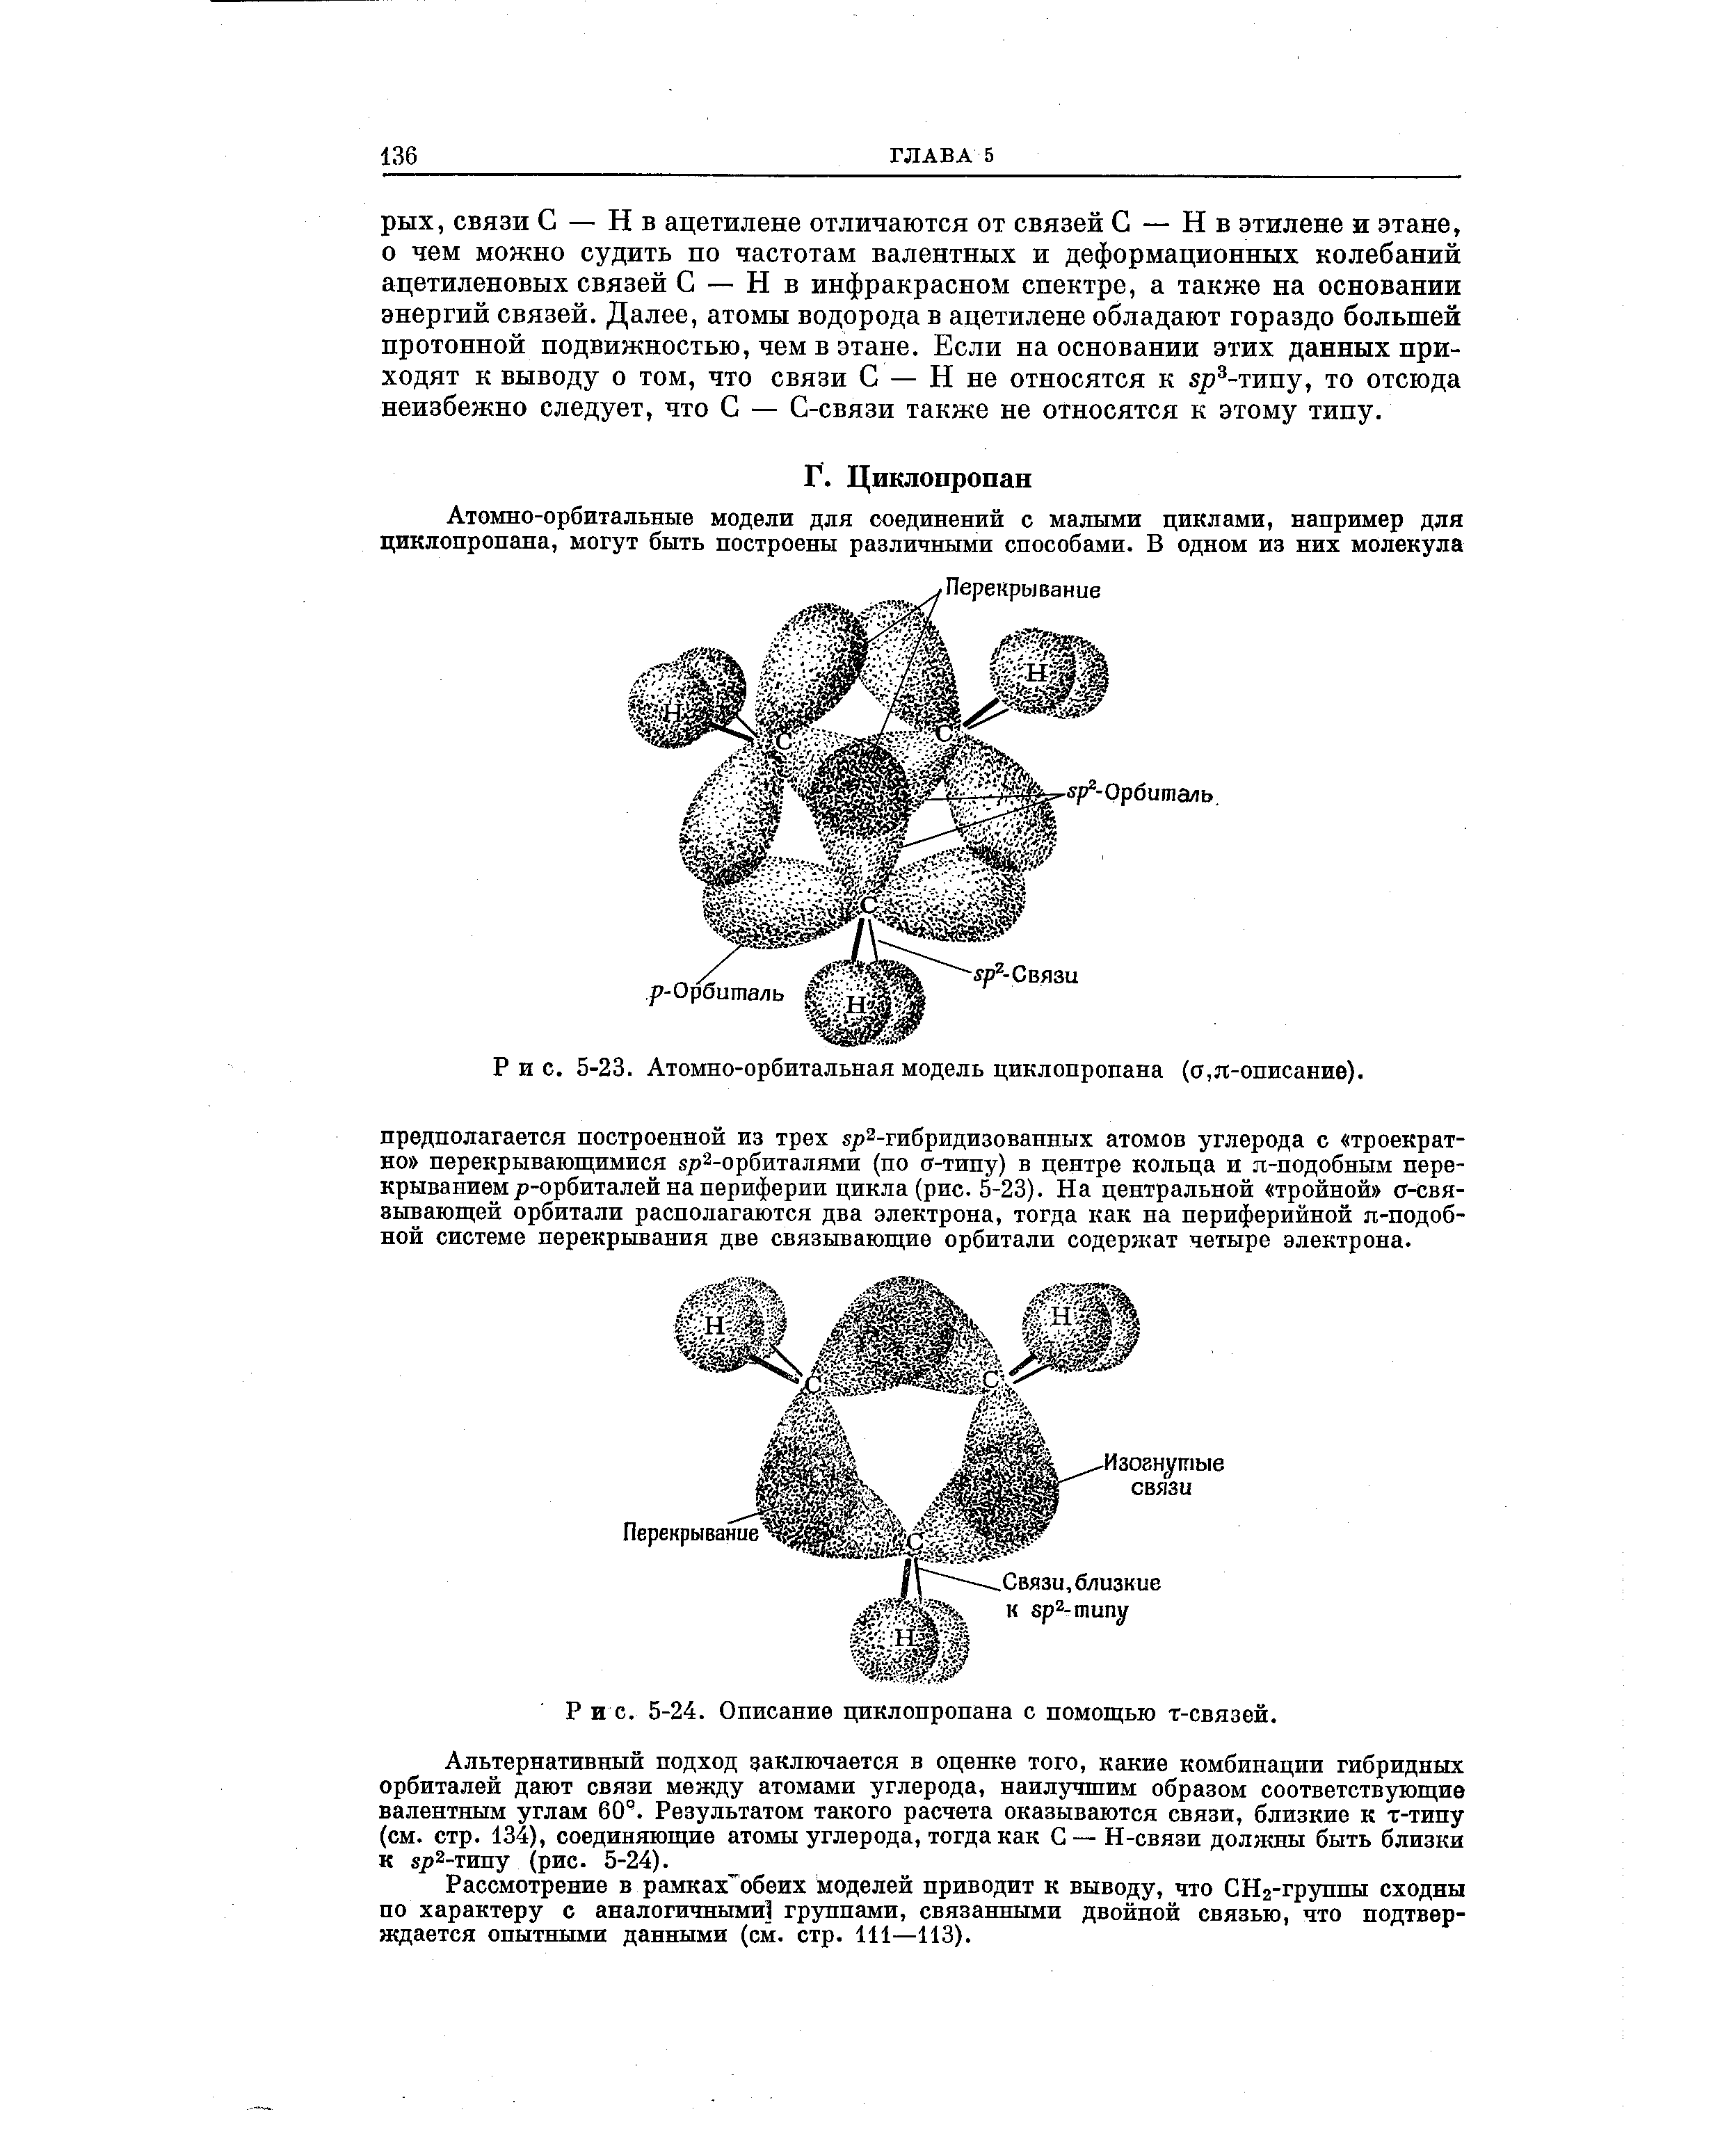 Описание циклопропана с помощью т-связей.